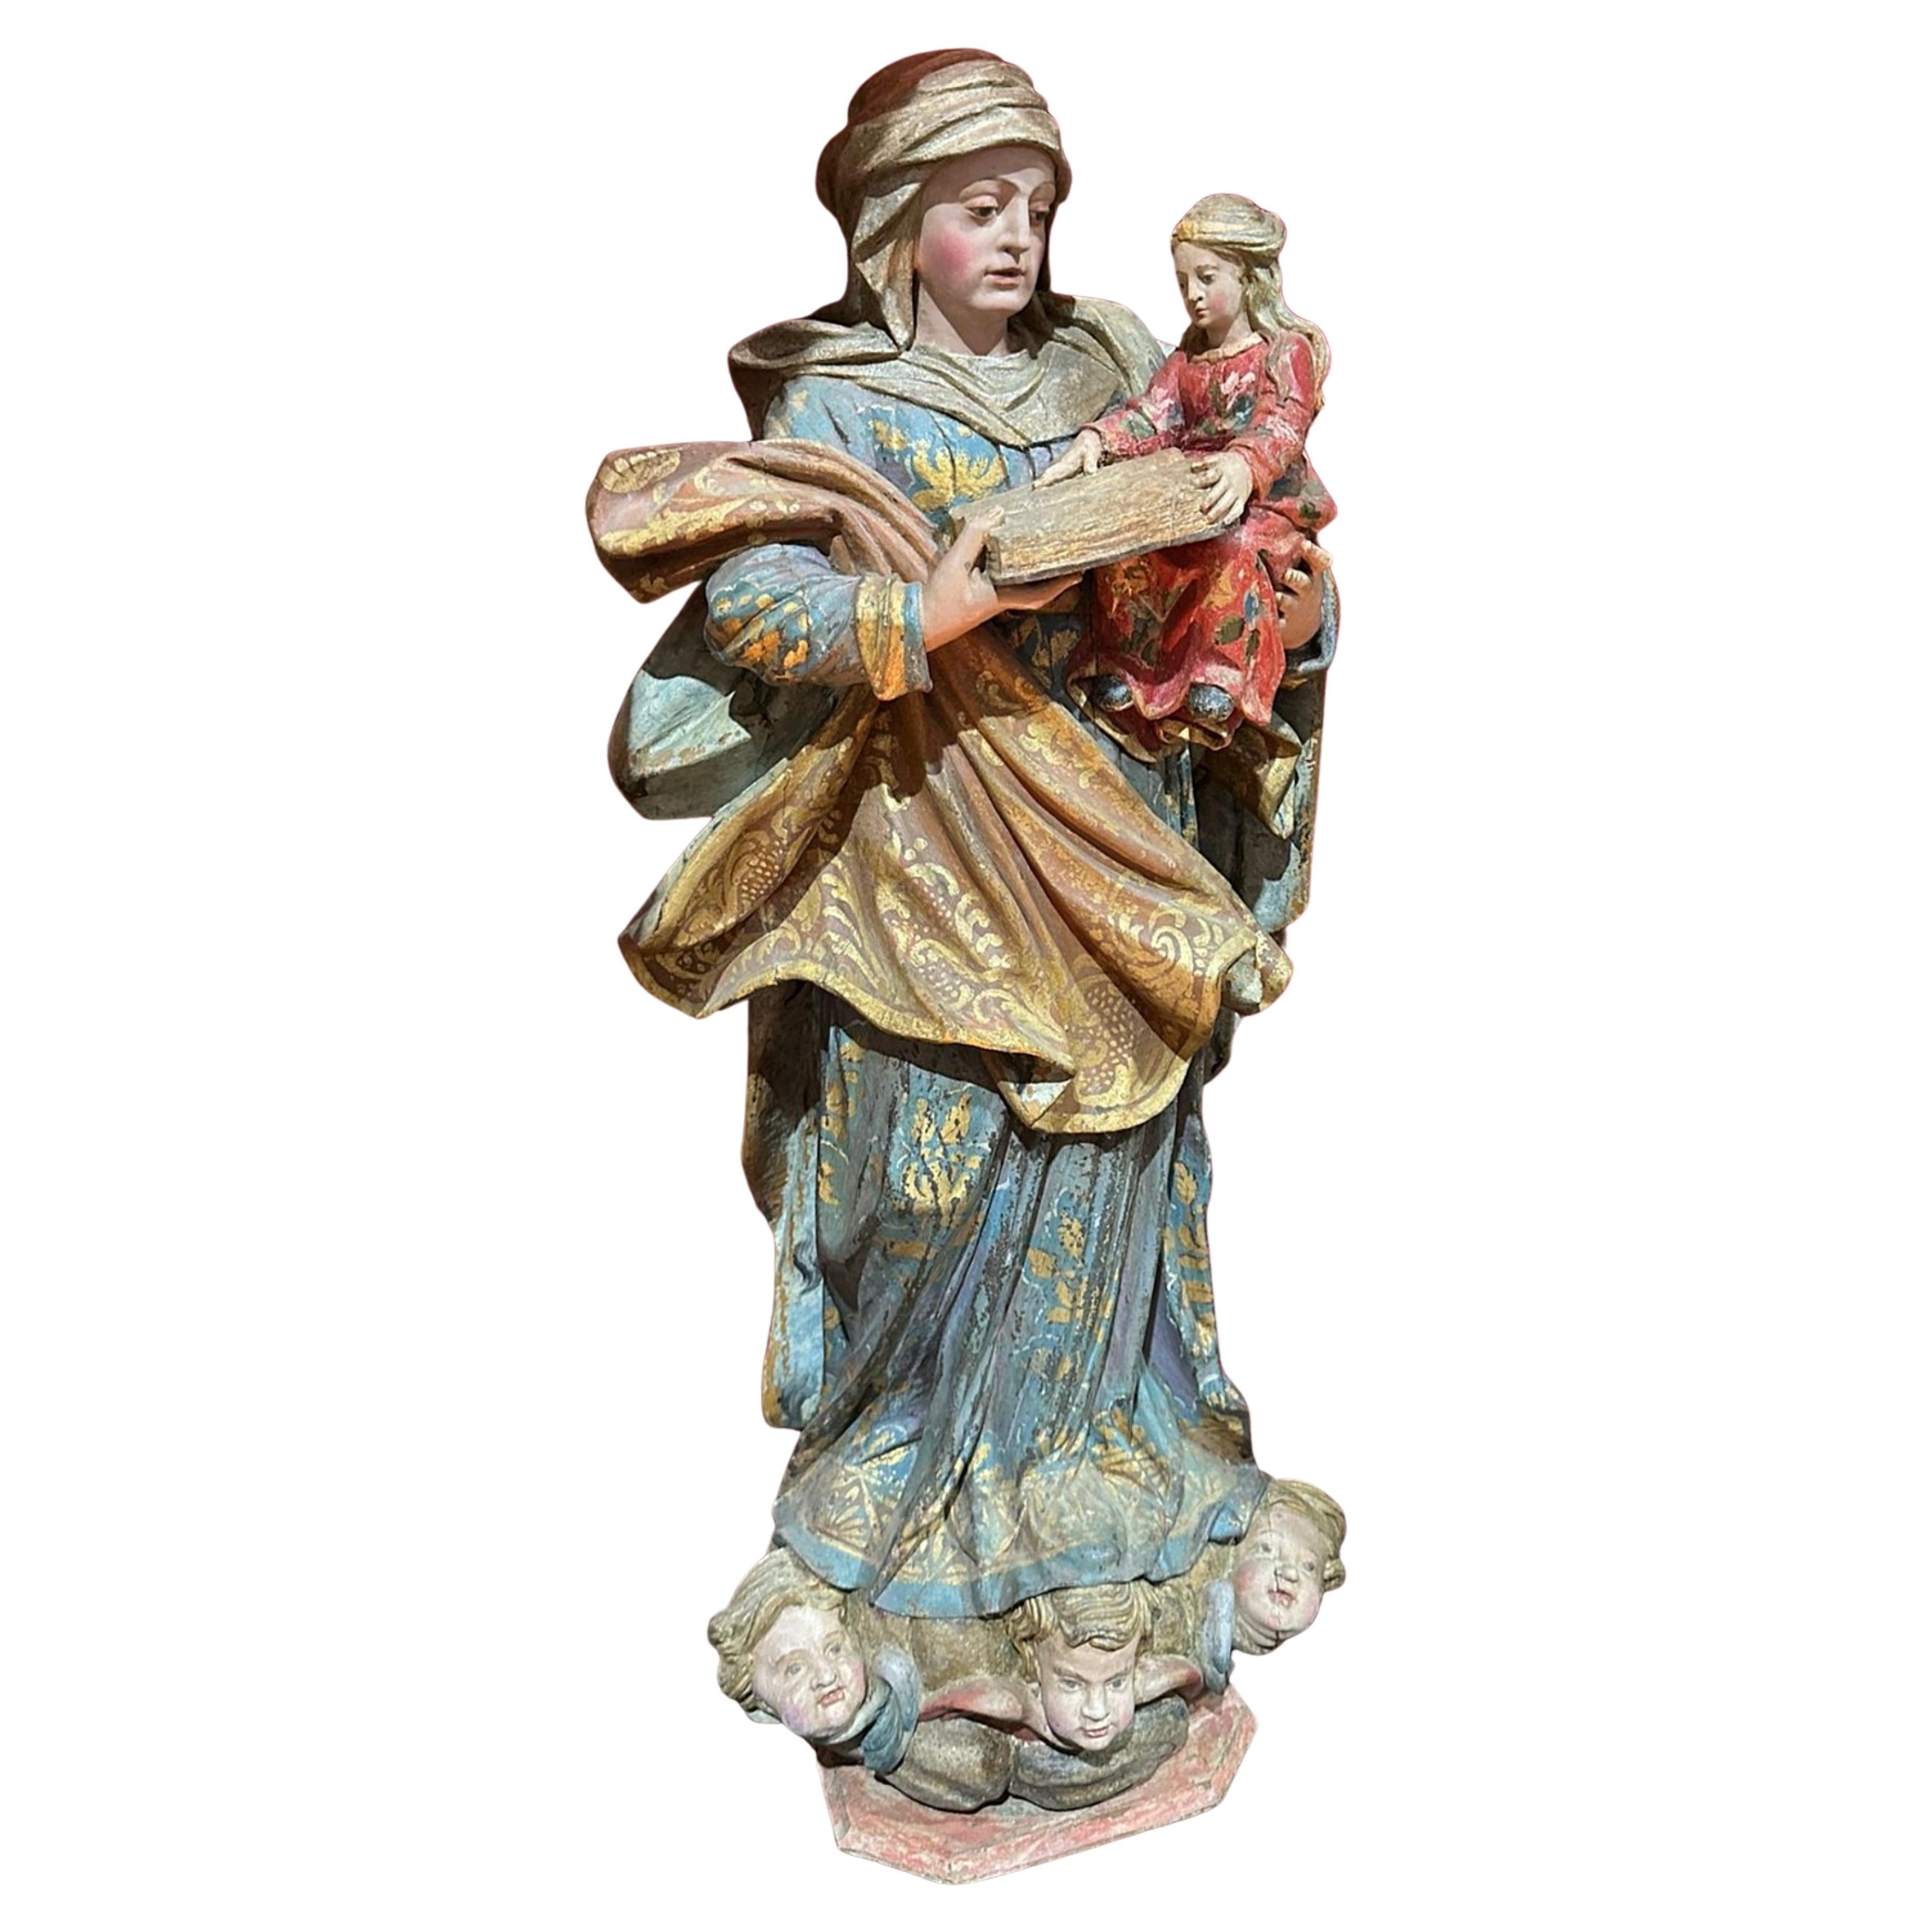 Importante escultura portuguesa del siglo XVII, "Nuestra Señora y el Niño Jesús" en venta